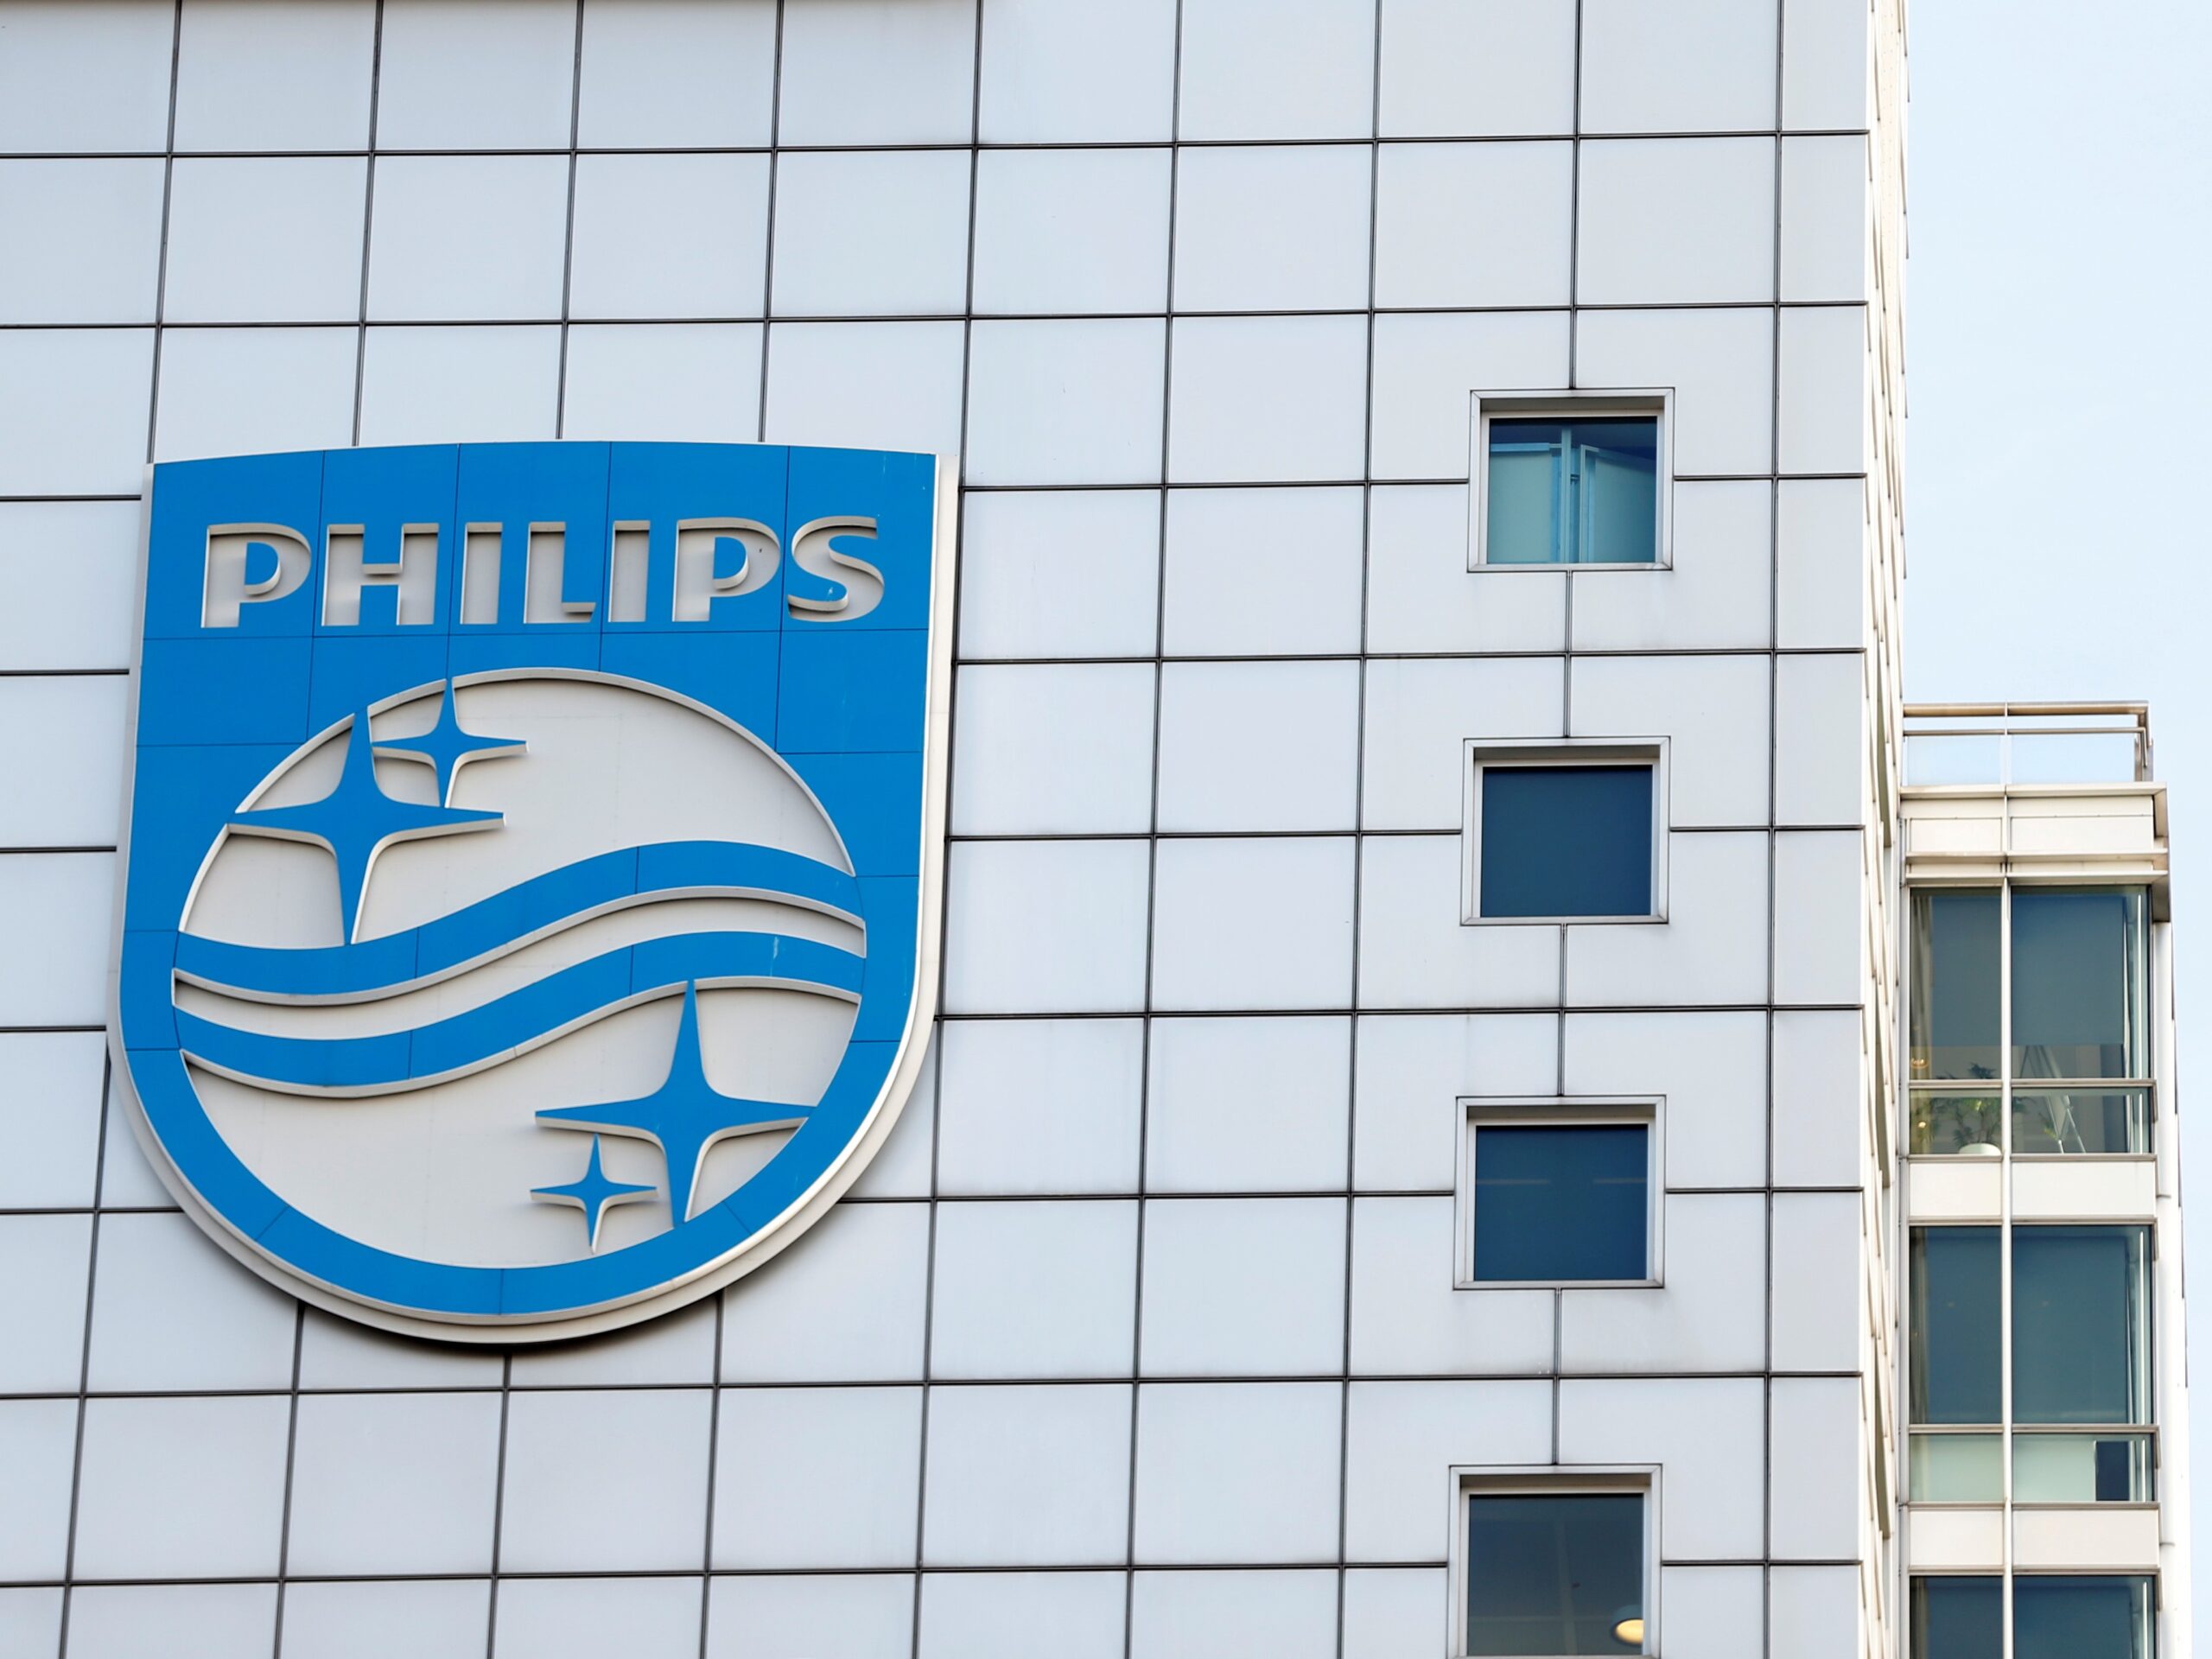 Spoločnosť Philips tvrdí, že testy výrobkov stiahnutých z trhu poukazujú na obmedzené zdravotné riziká